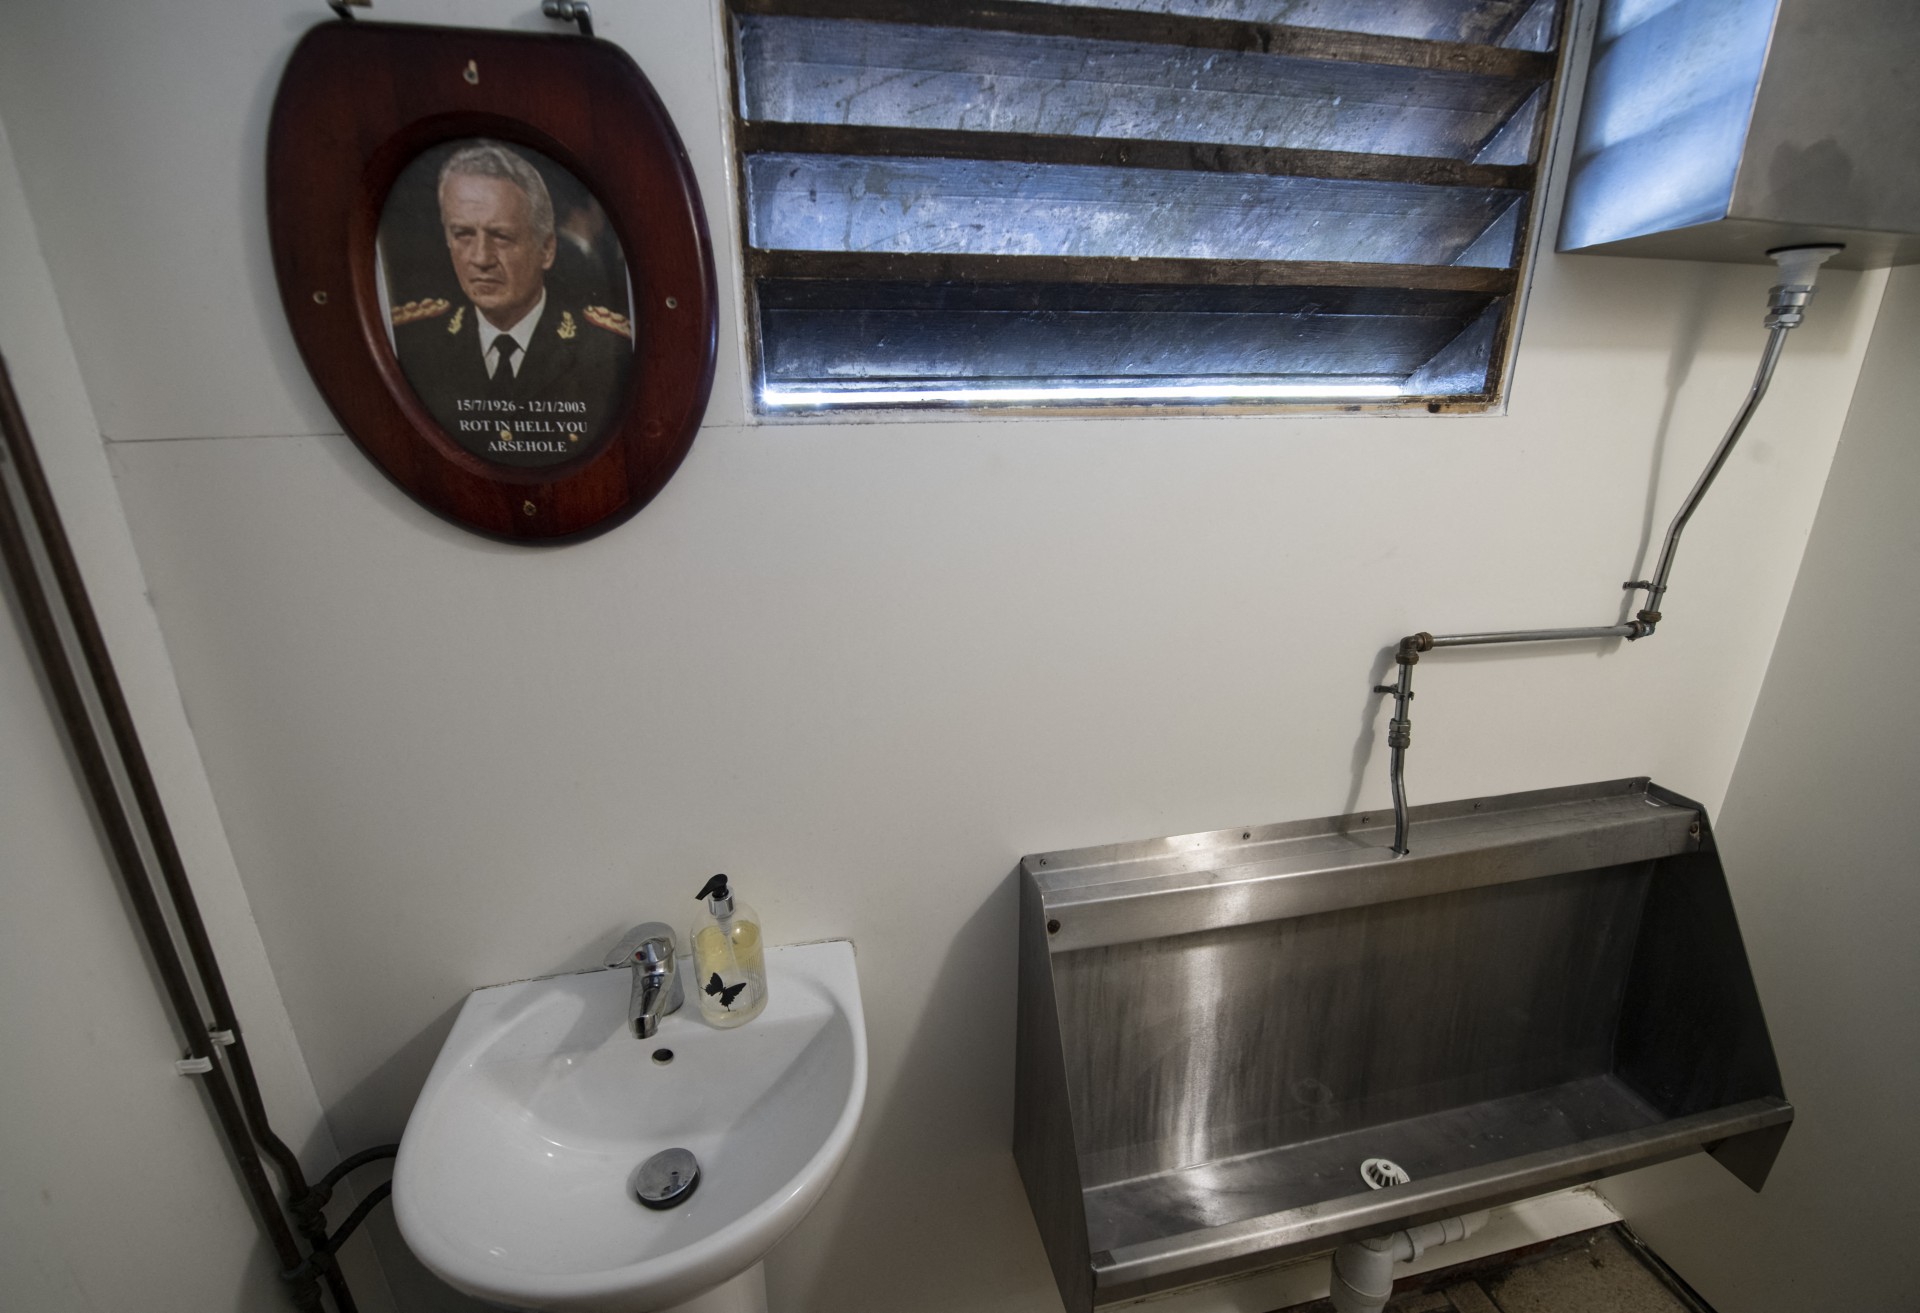 Esta foto de arquivo tirada em 17 de outubro de 2019 mostra um retrato do ditador argentino Leopoldo Galtieri (que liderou o ataque às Malvinas) emoldurada em uma tampa de sanitário, pendurada no banheiro do Victory Pub em Stanley, Ilhas Malvinas(Foto: PABLO PORCIUNCULA BRUNE / AFP)